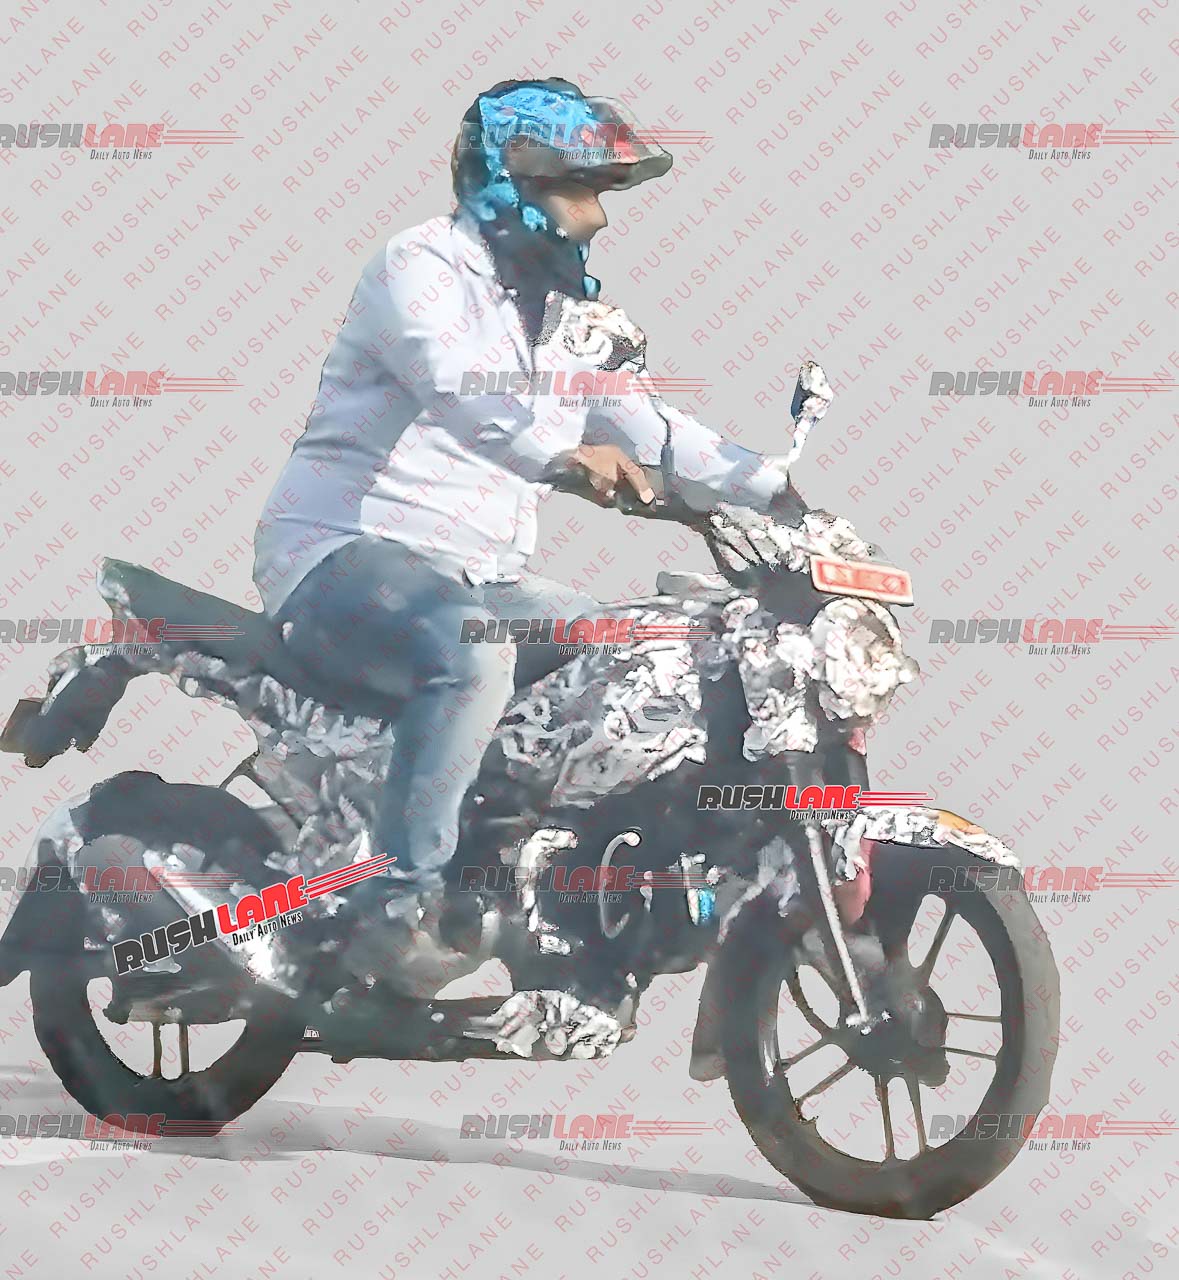 New Bajaj CNG Motorcycle Spied